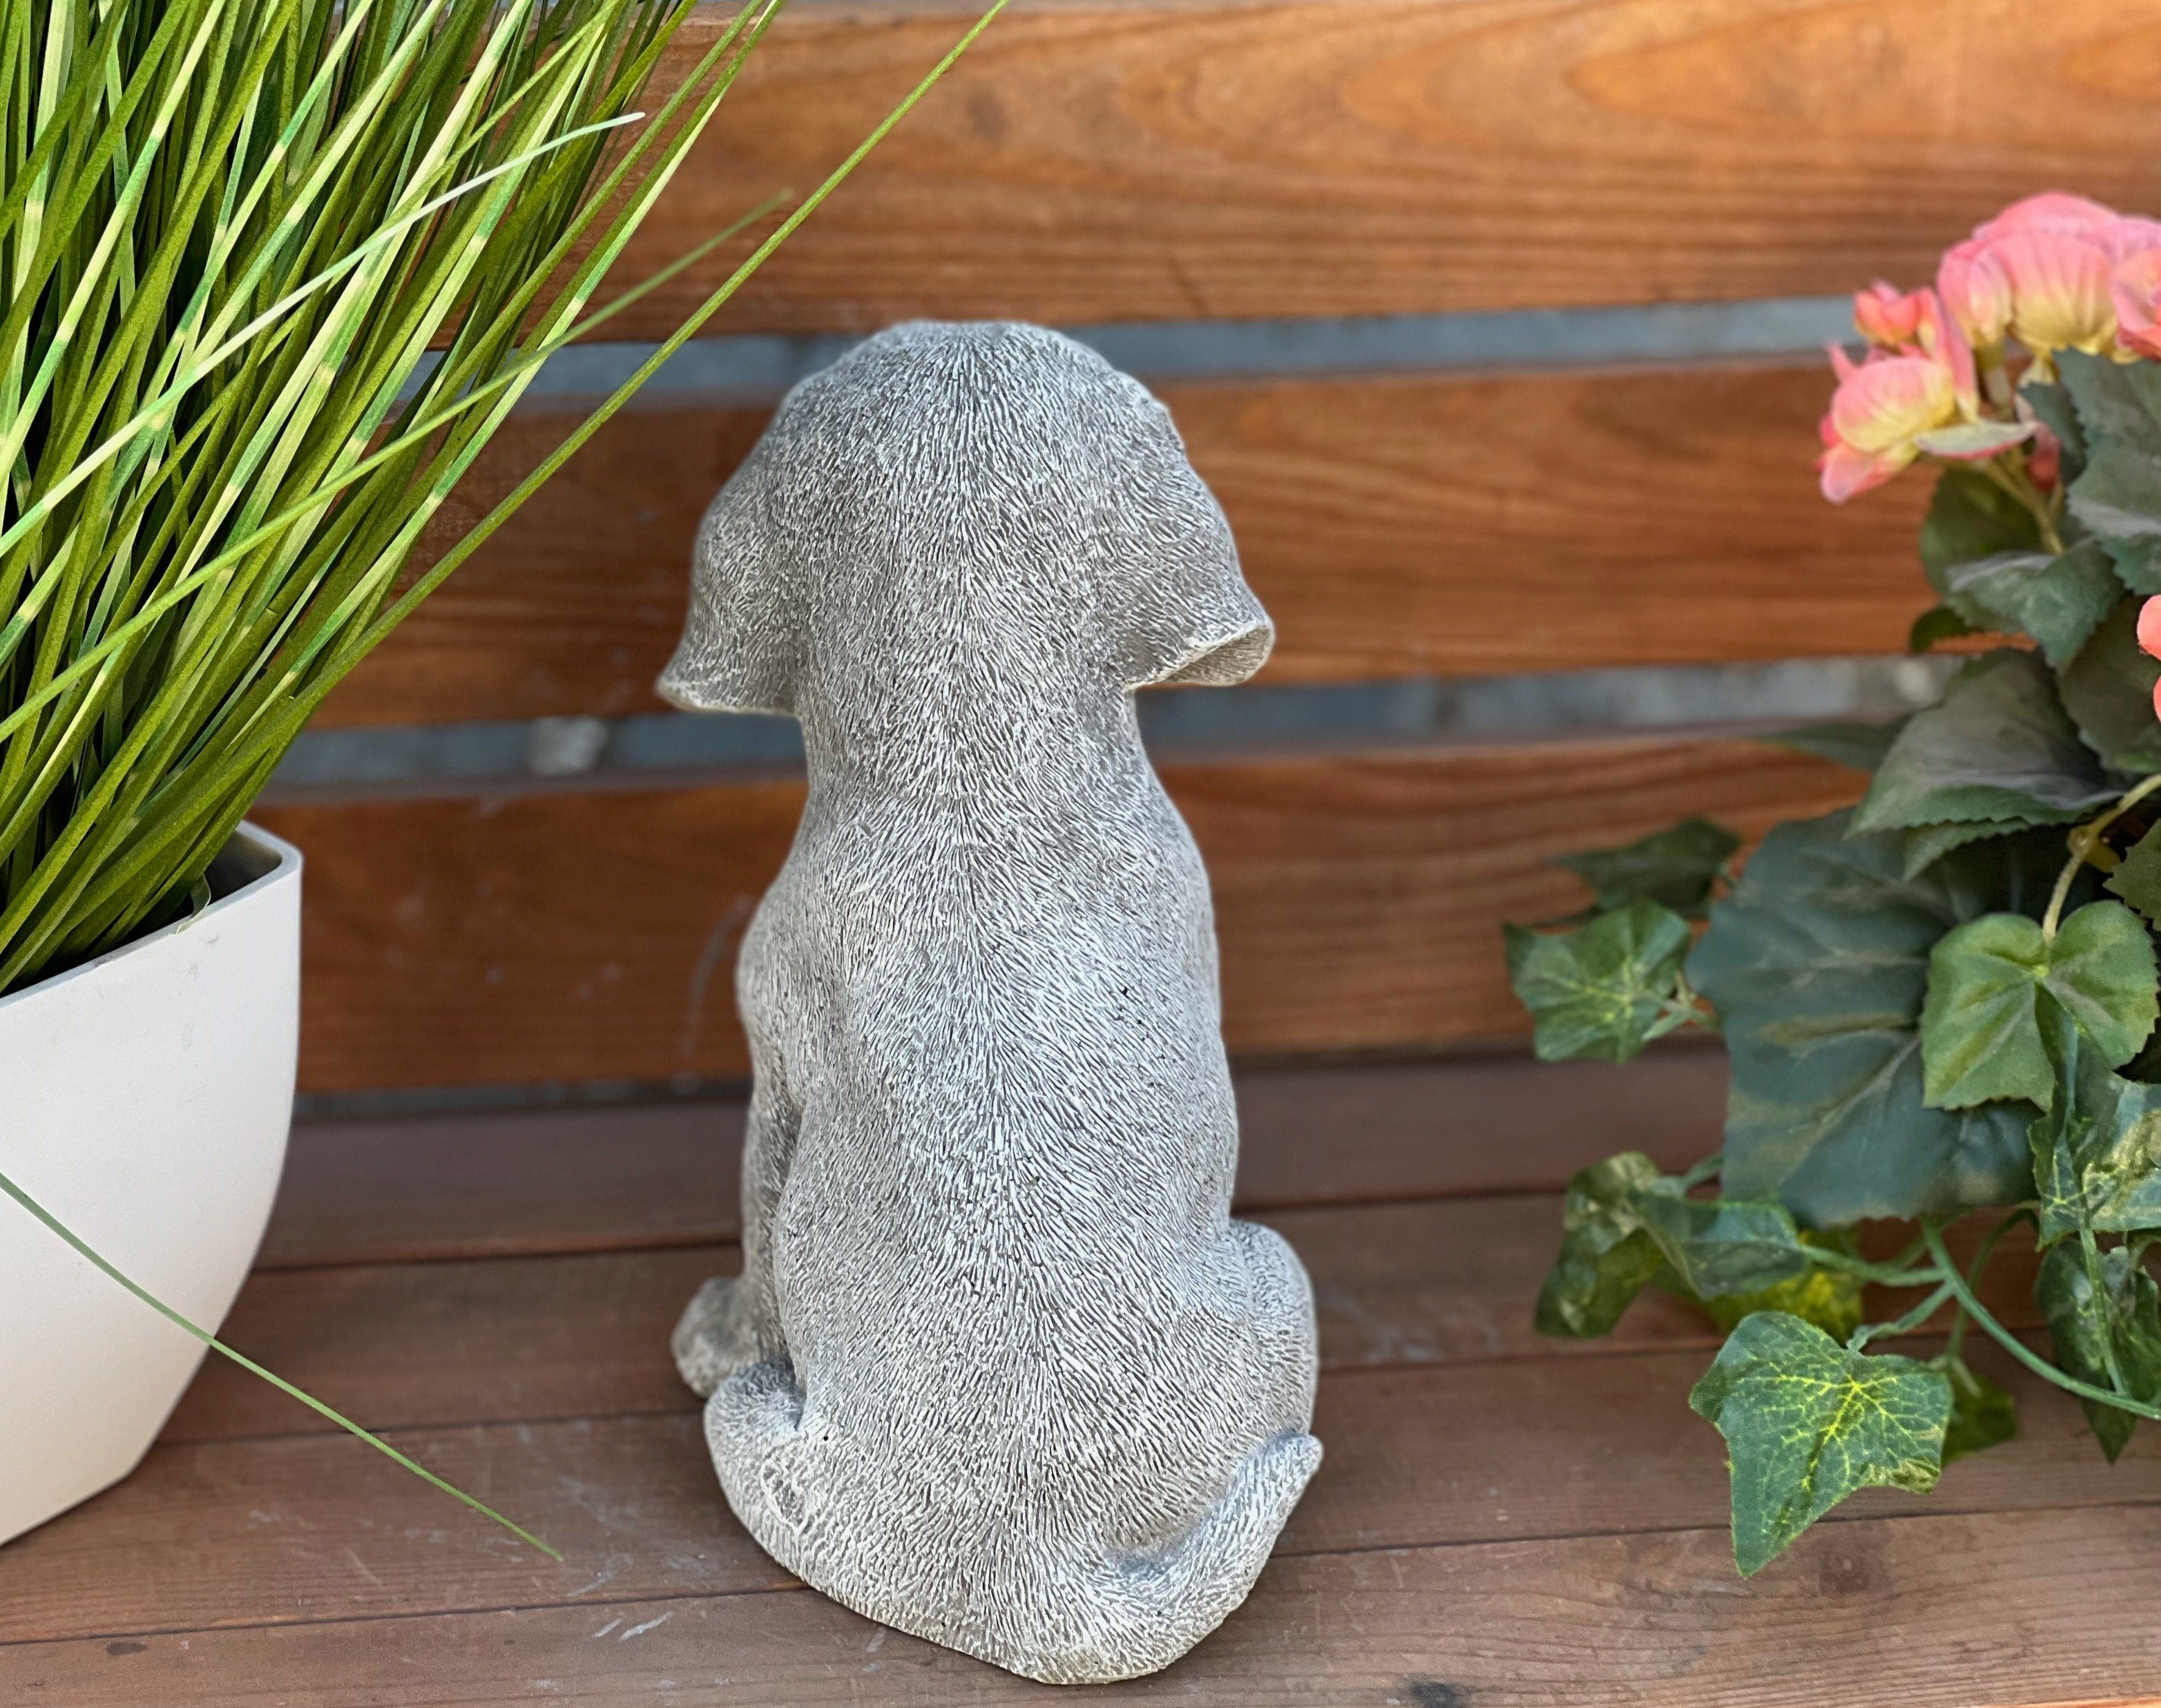 Stone and Style Gartenfigur Beagle Steinfigur witterungsbeständig Gartenfigur Welpe